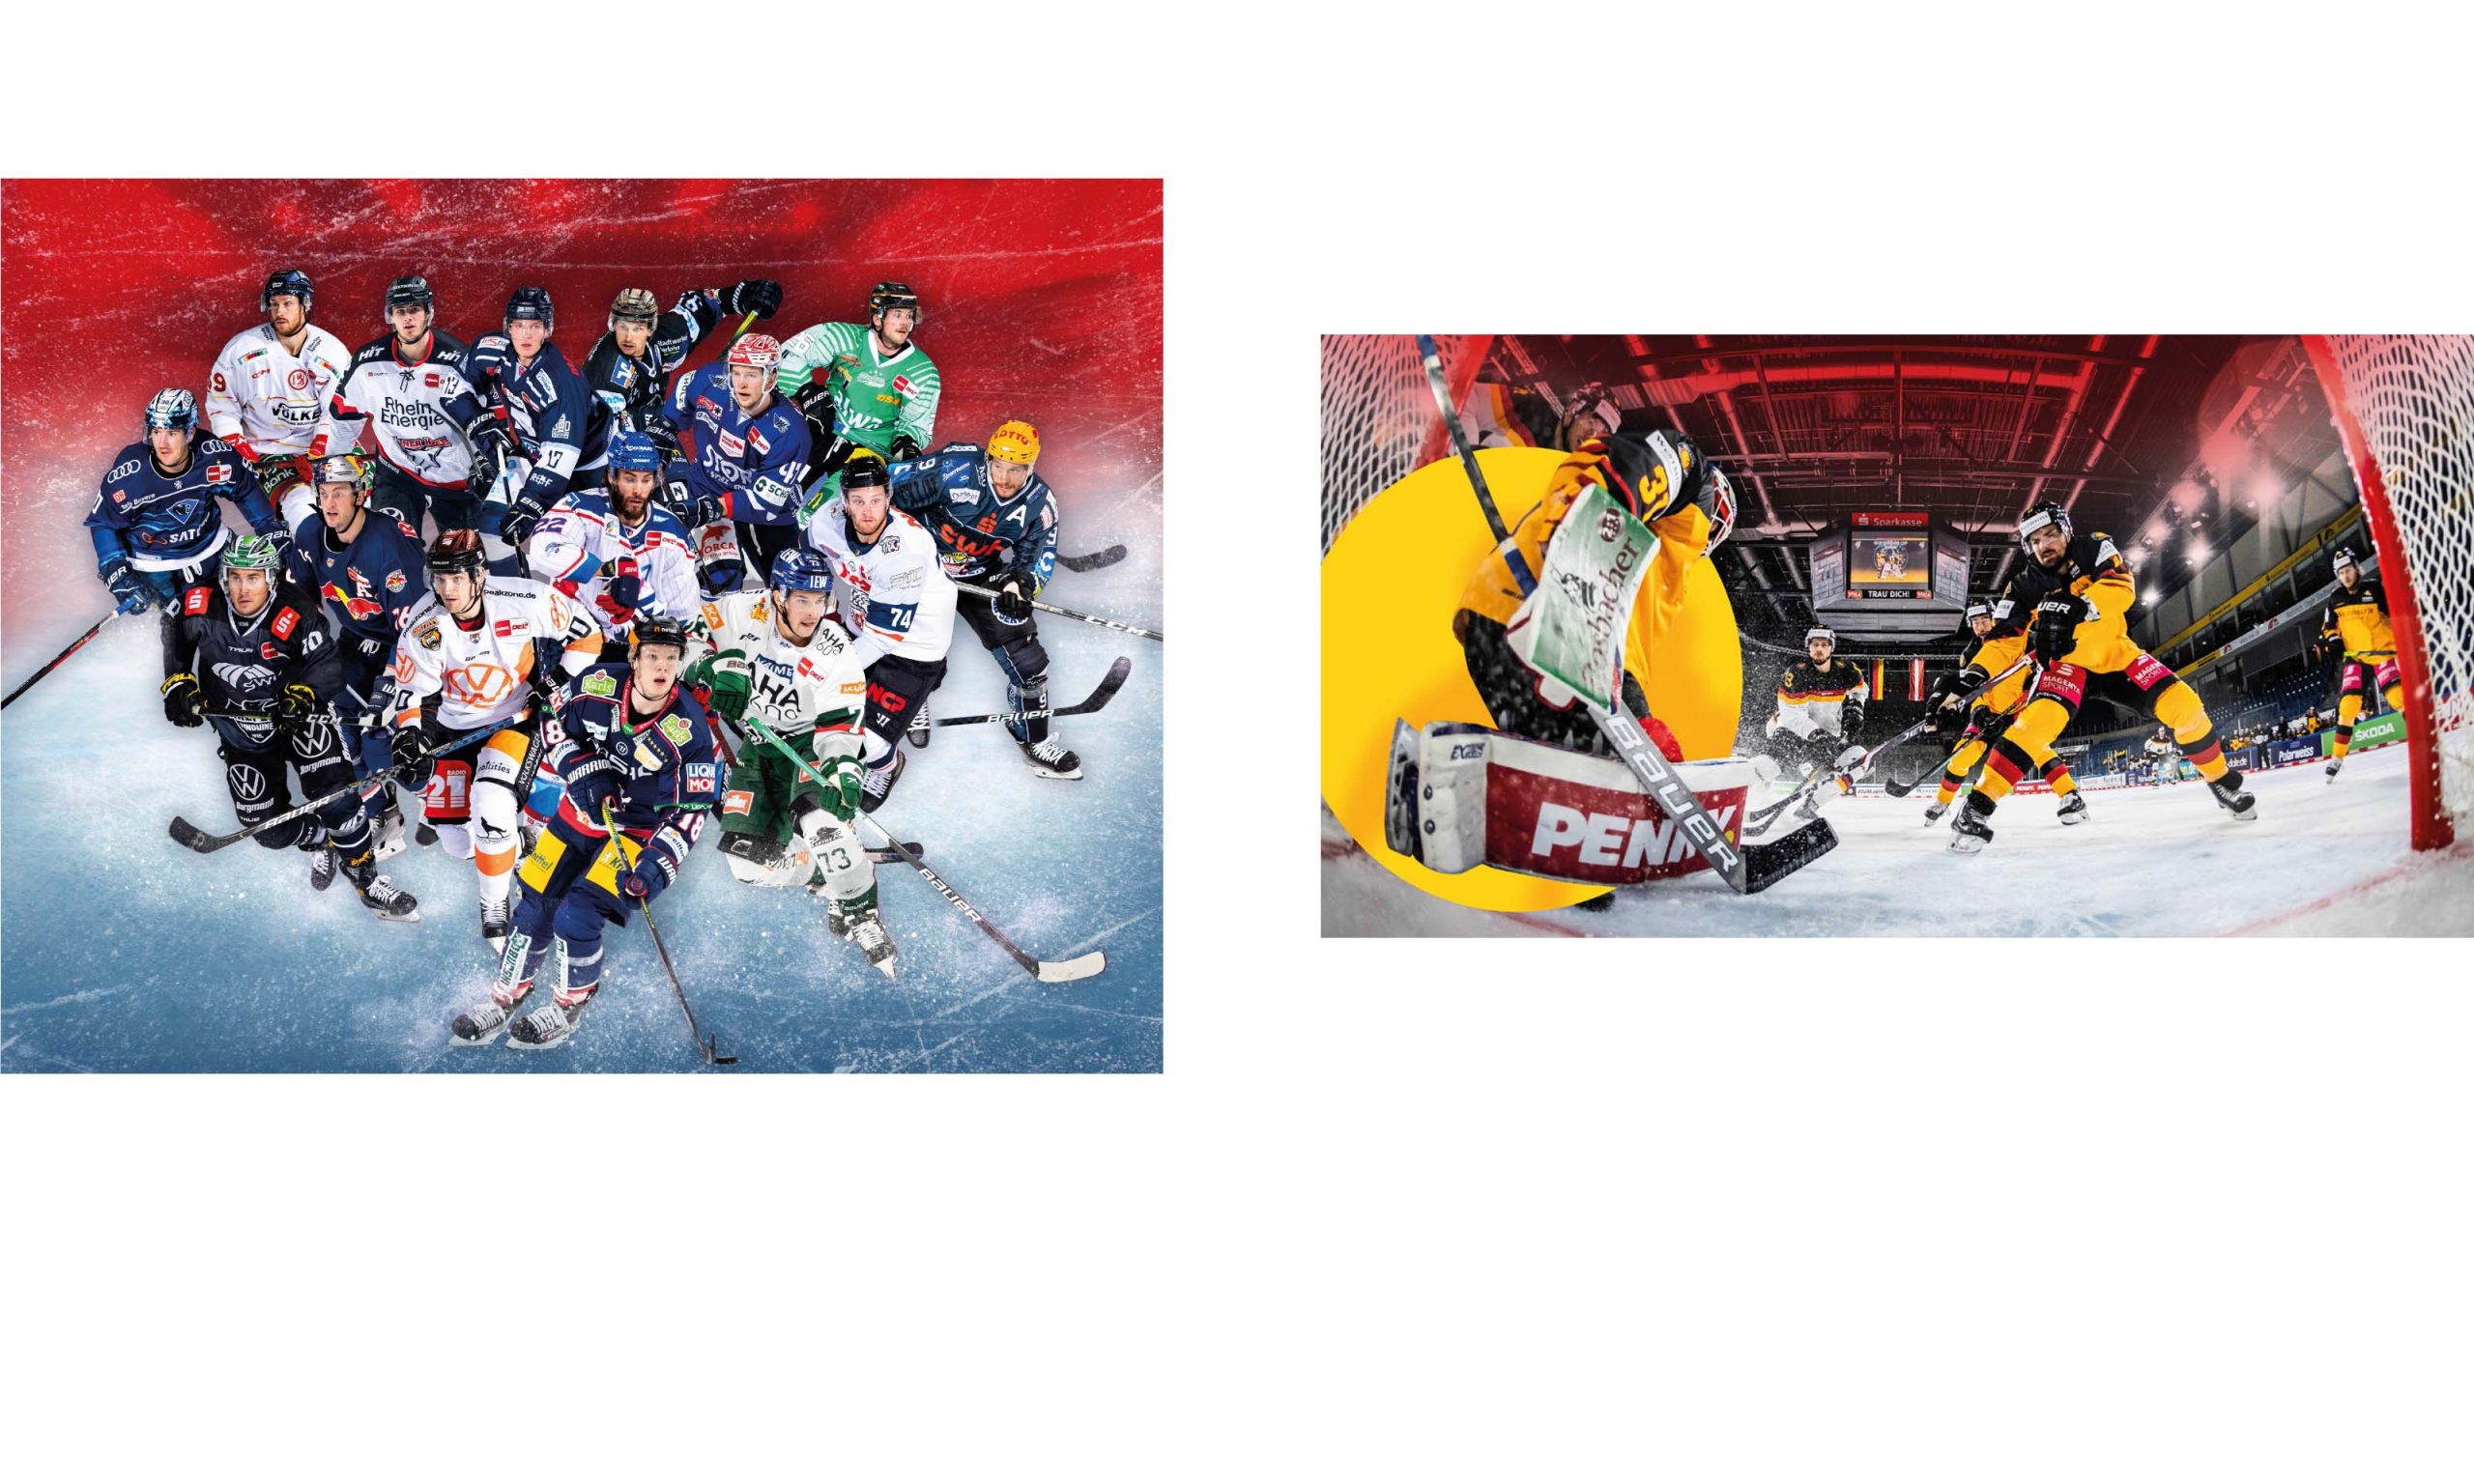 Zwei Fotos: links eine Aufstellung von Eishockey-Spielern in unterschiedlichen Trikots, rechts eine Spielszene